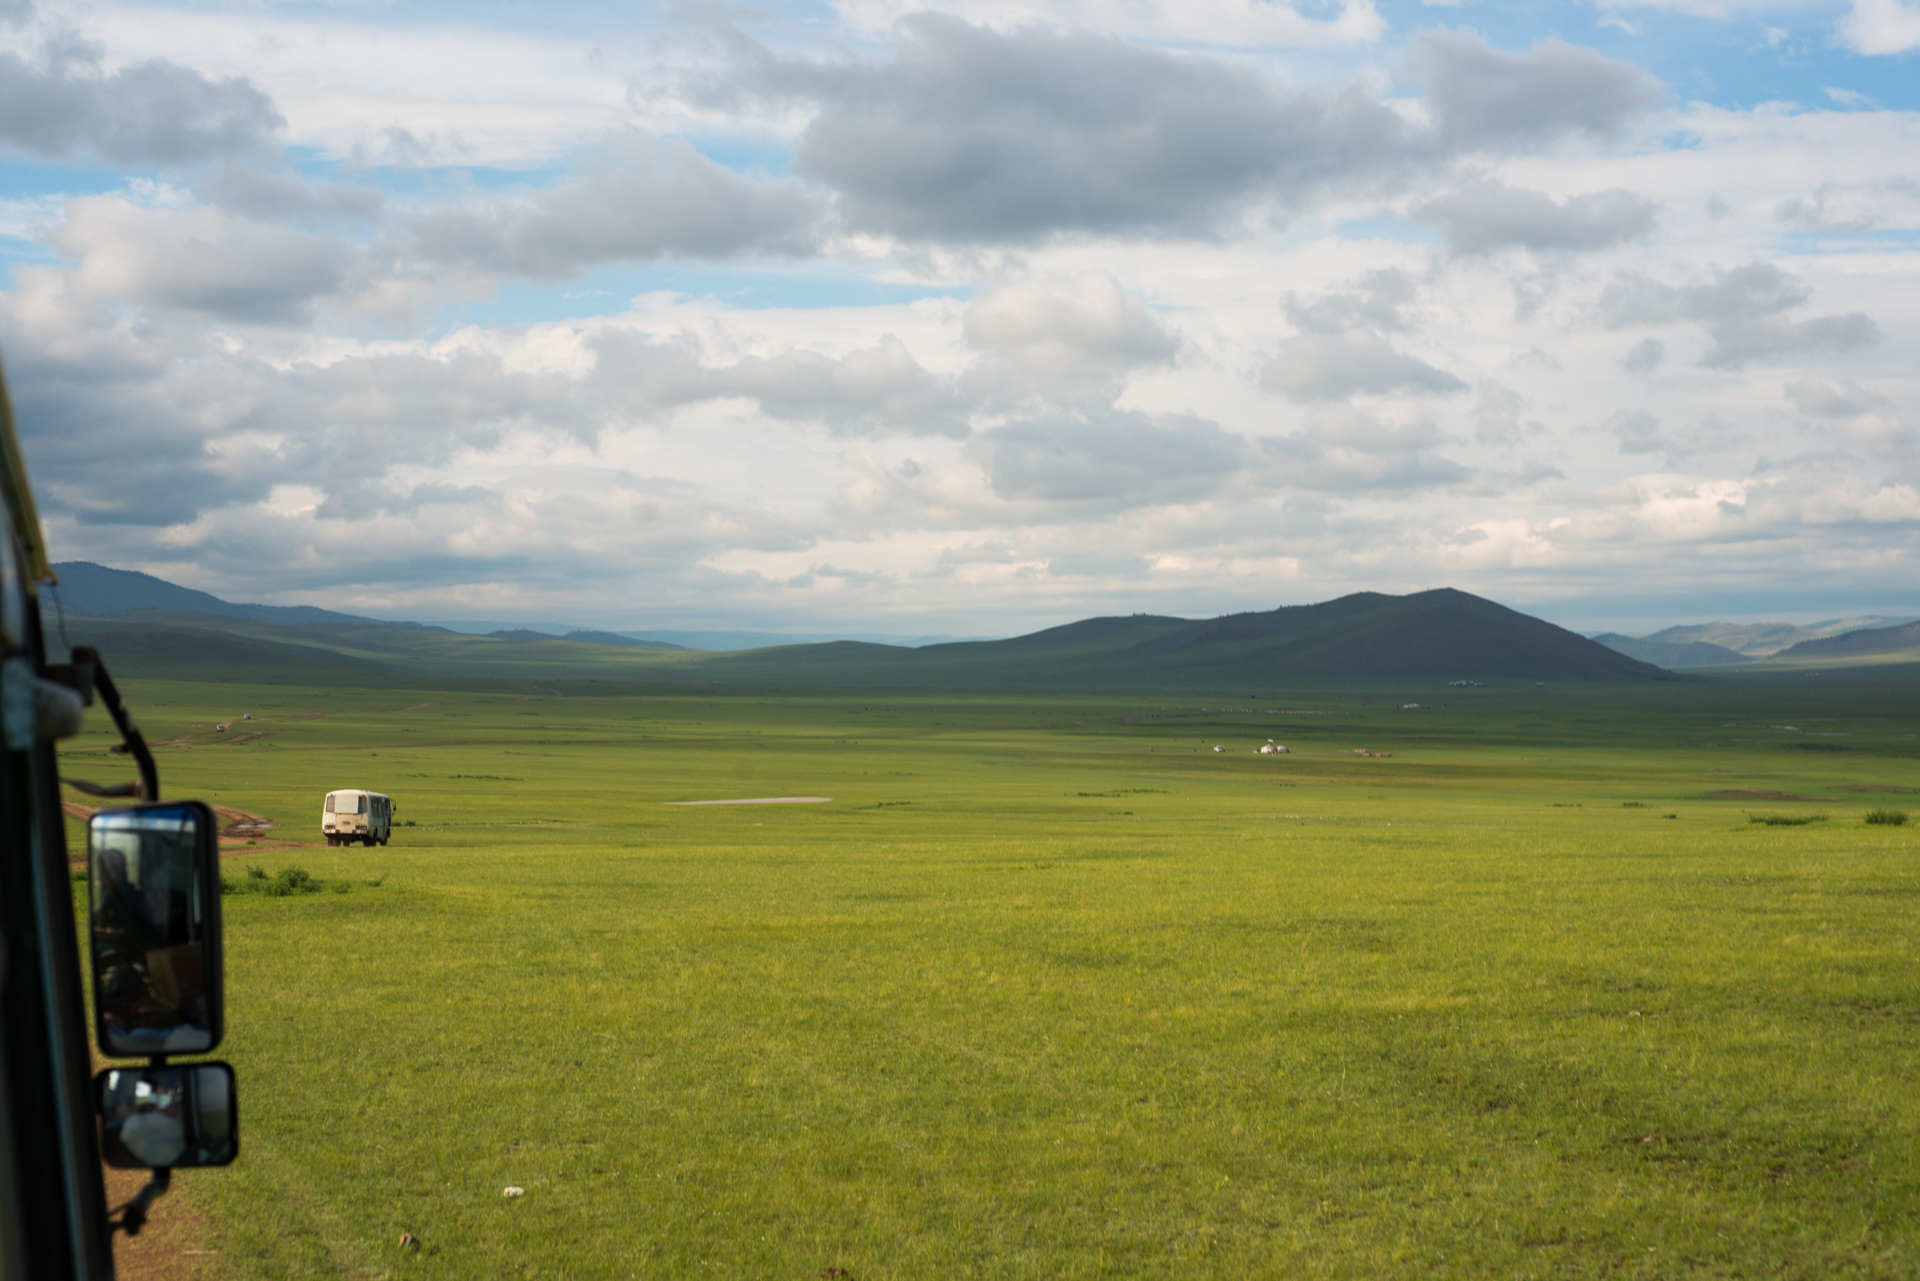 150801_410.jpg : 몽골 학습탐사 2진 사진 8월1일 ...자